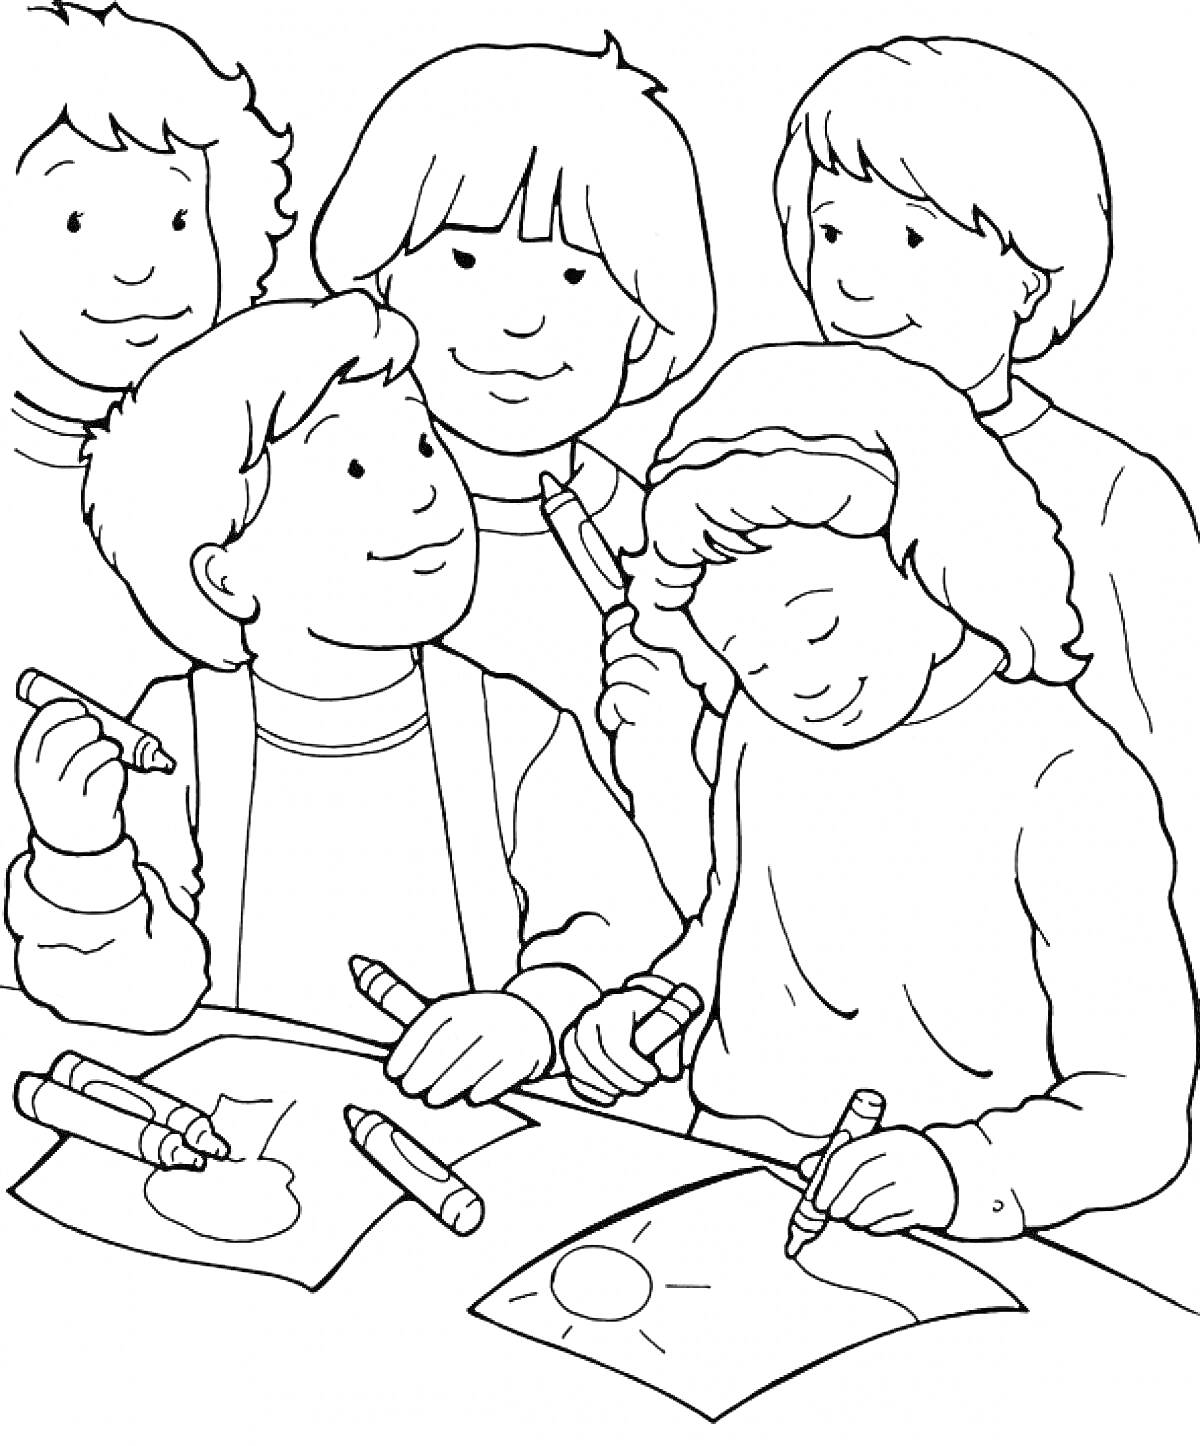 Раскраска Дети, рисующие за столом мелками, с улыбками на лицах